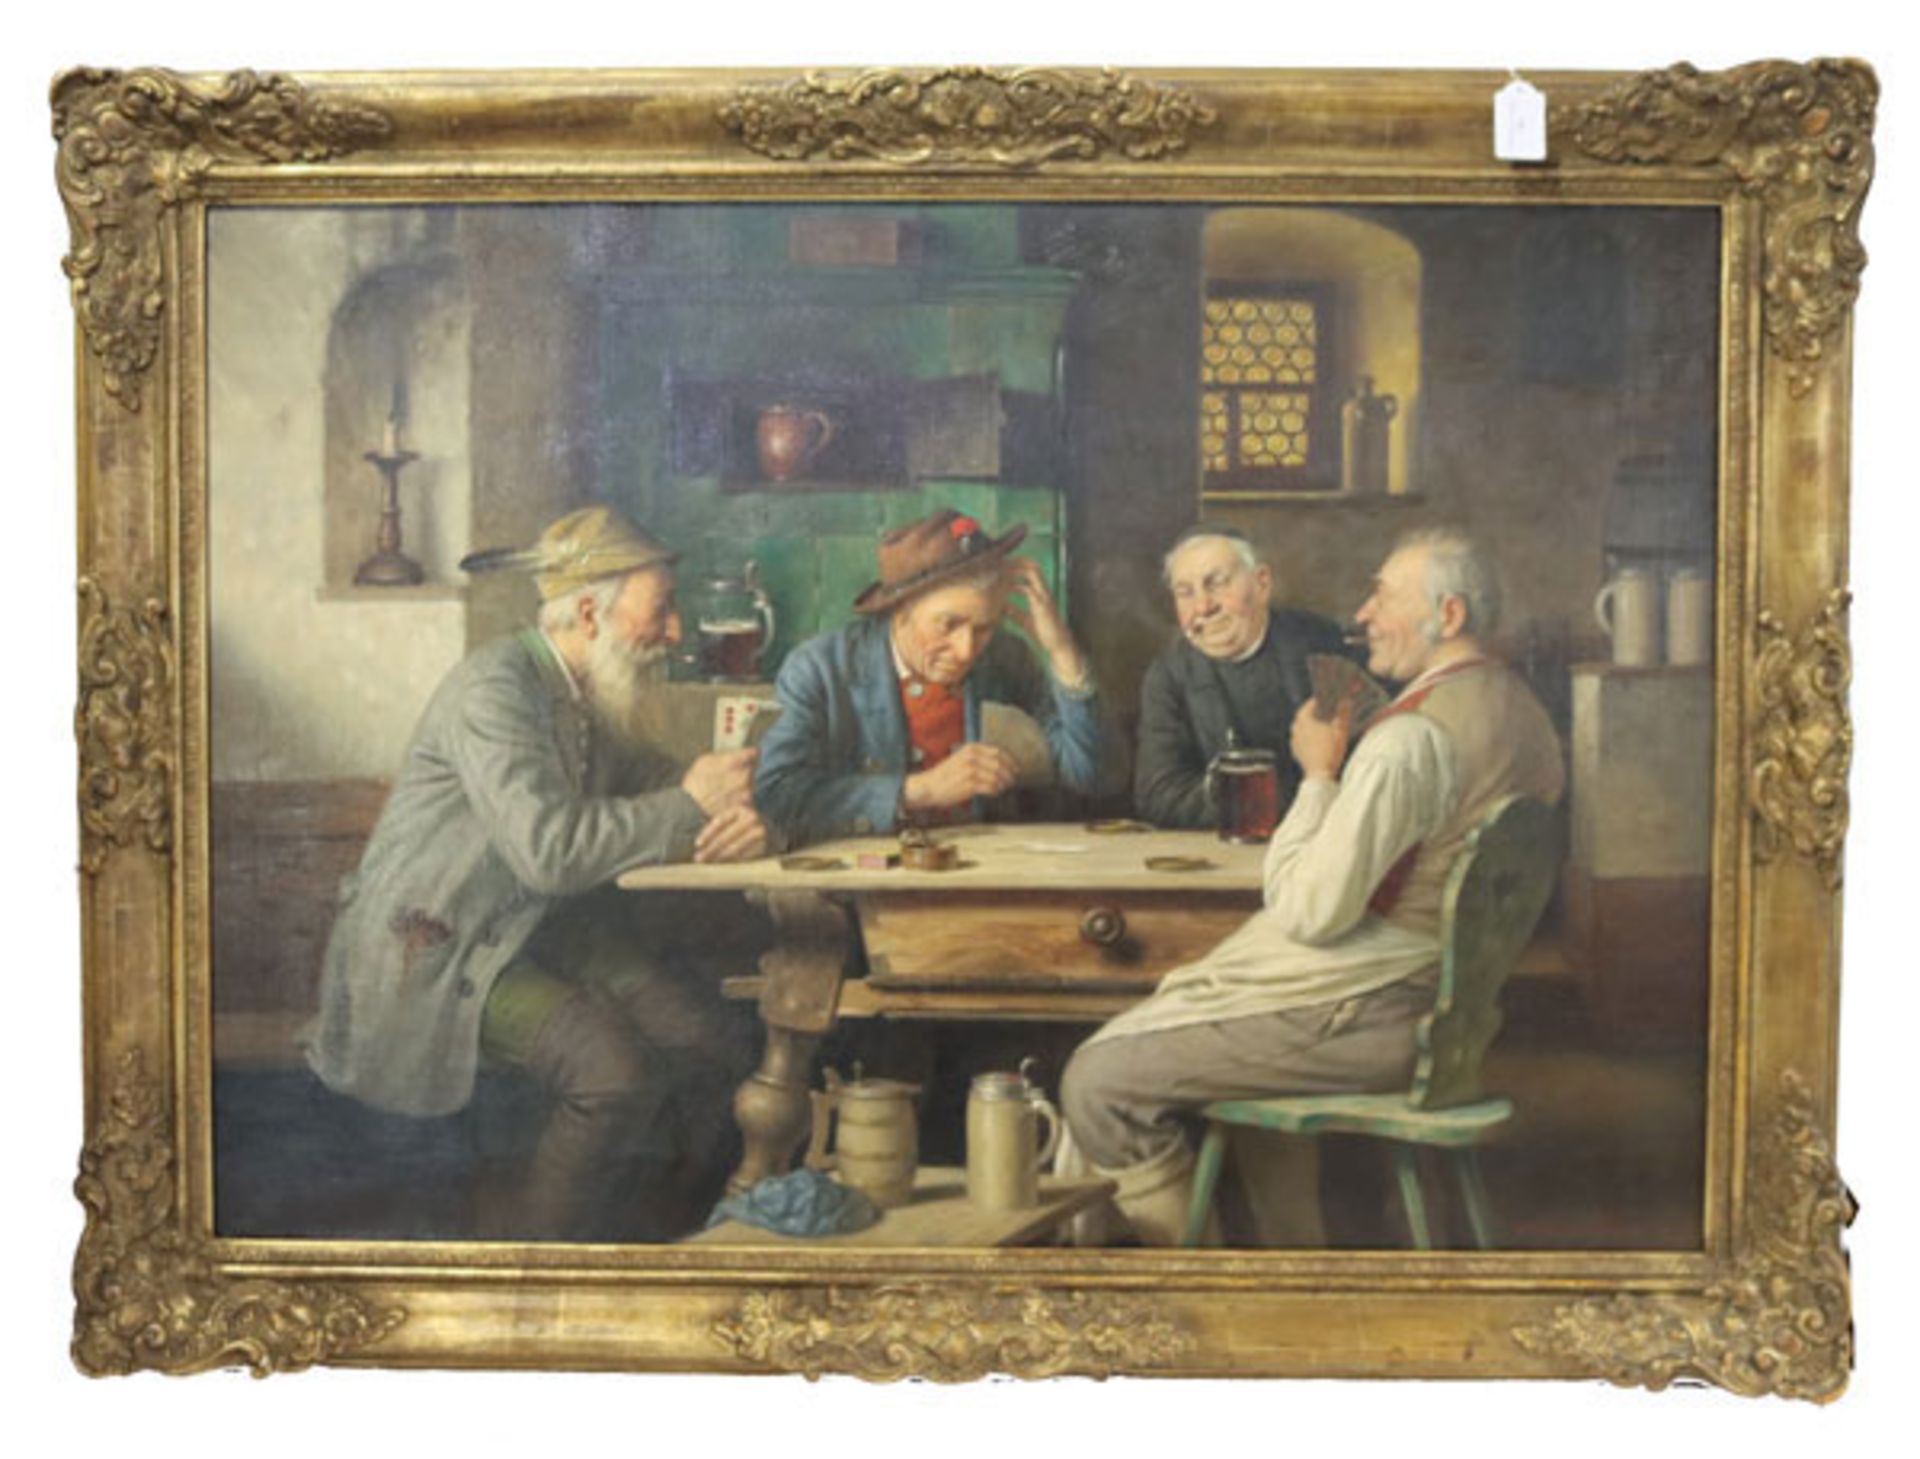 Gemälde ÖL/LW 'Wirtshaus-Szenerie mit Kartenspieler', signiert Wagner-Höhenberg, Josef, * 1870